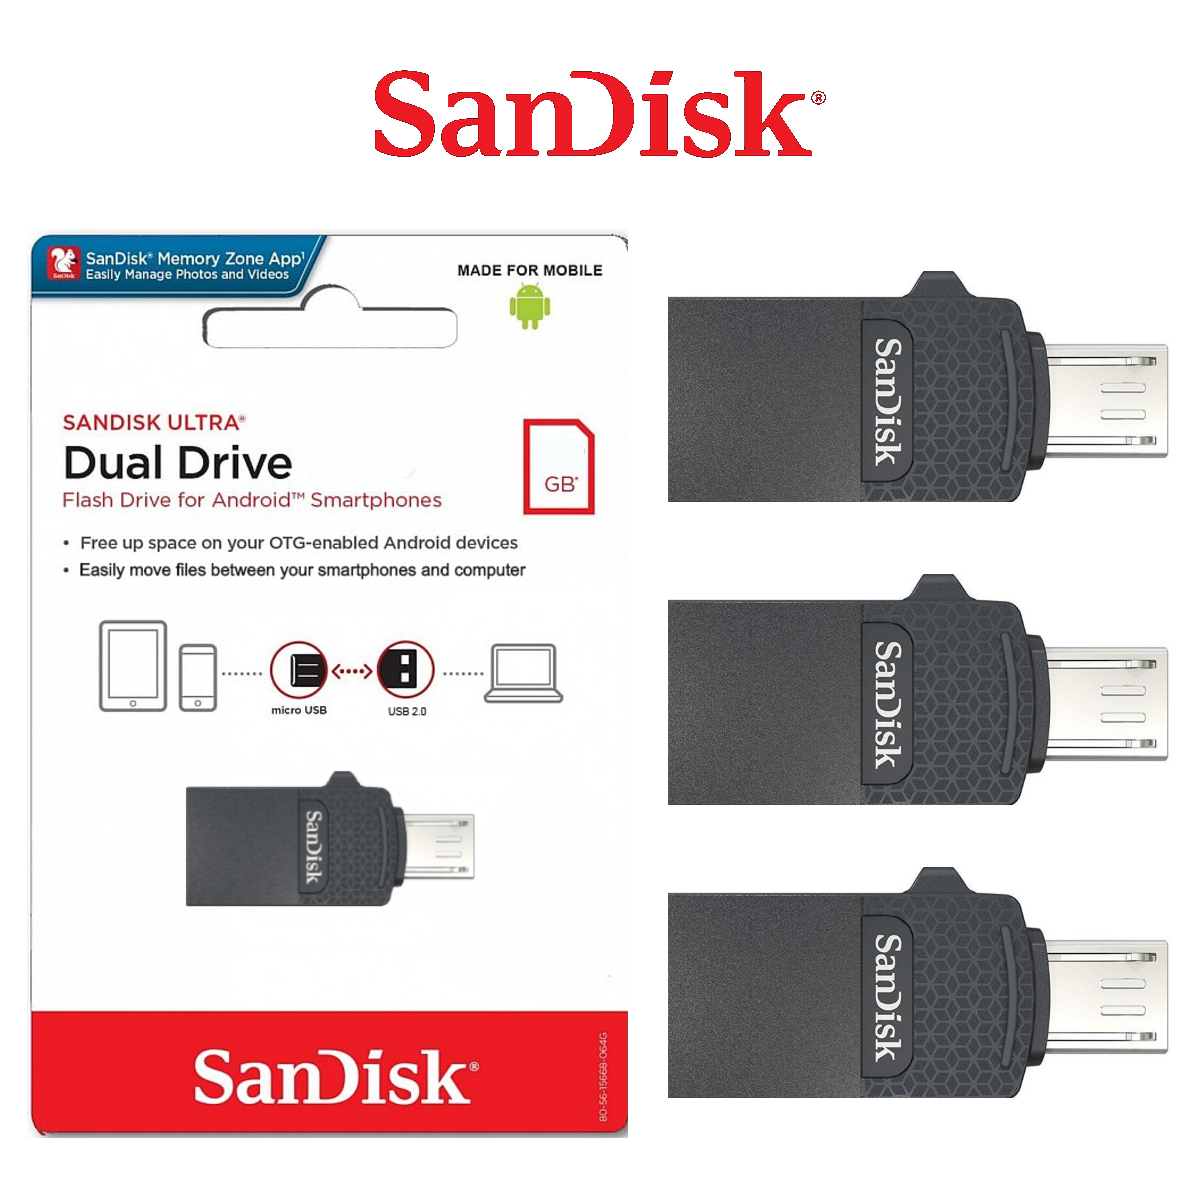 SanDisk USB Dual Drive OTG 2.0 MicroUSB 16GB 32GB 64GB Flash Drive Memory Stick